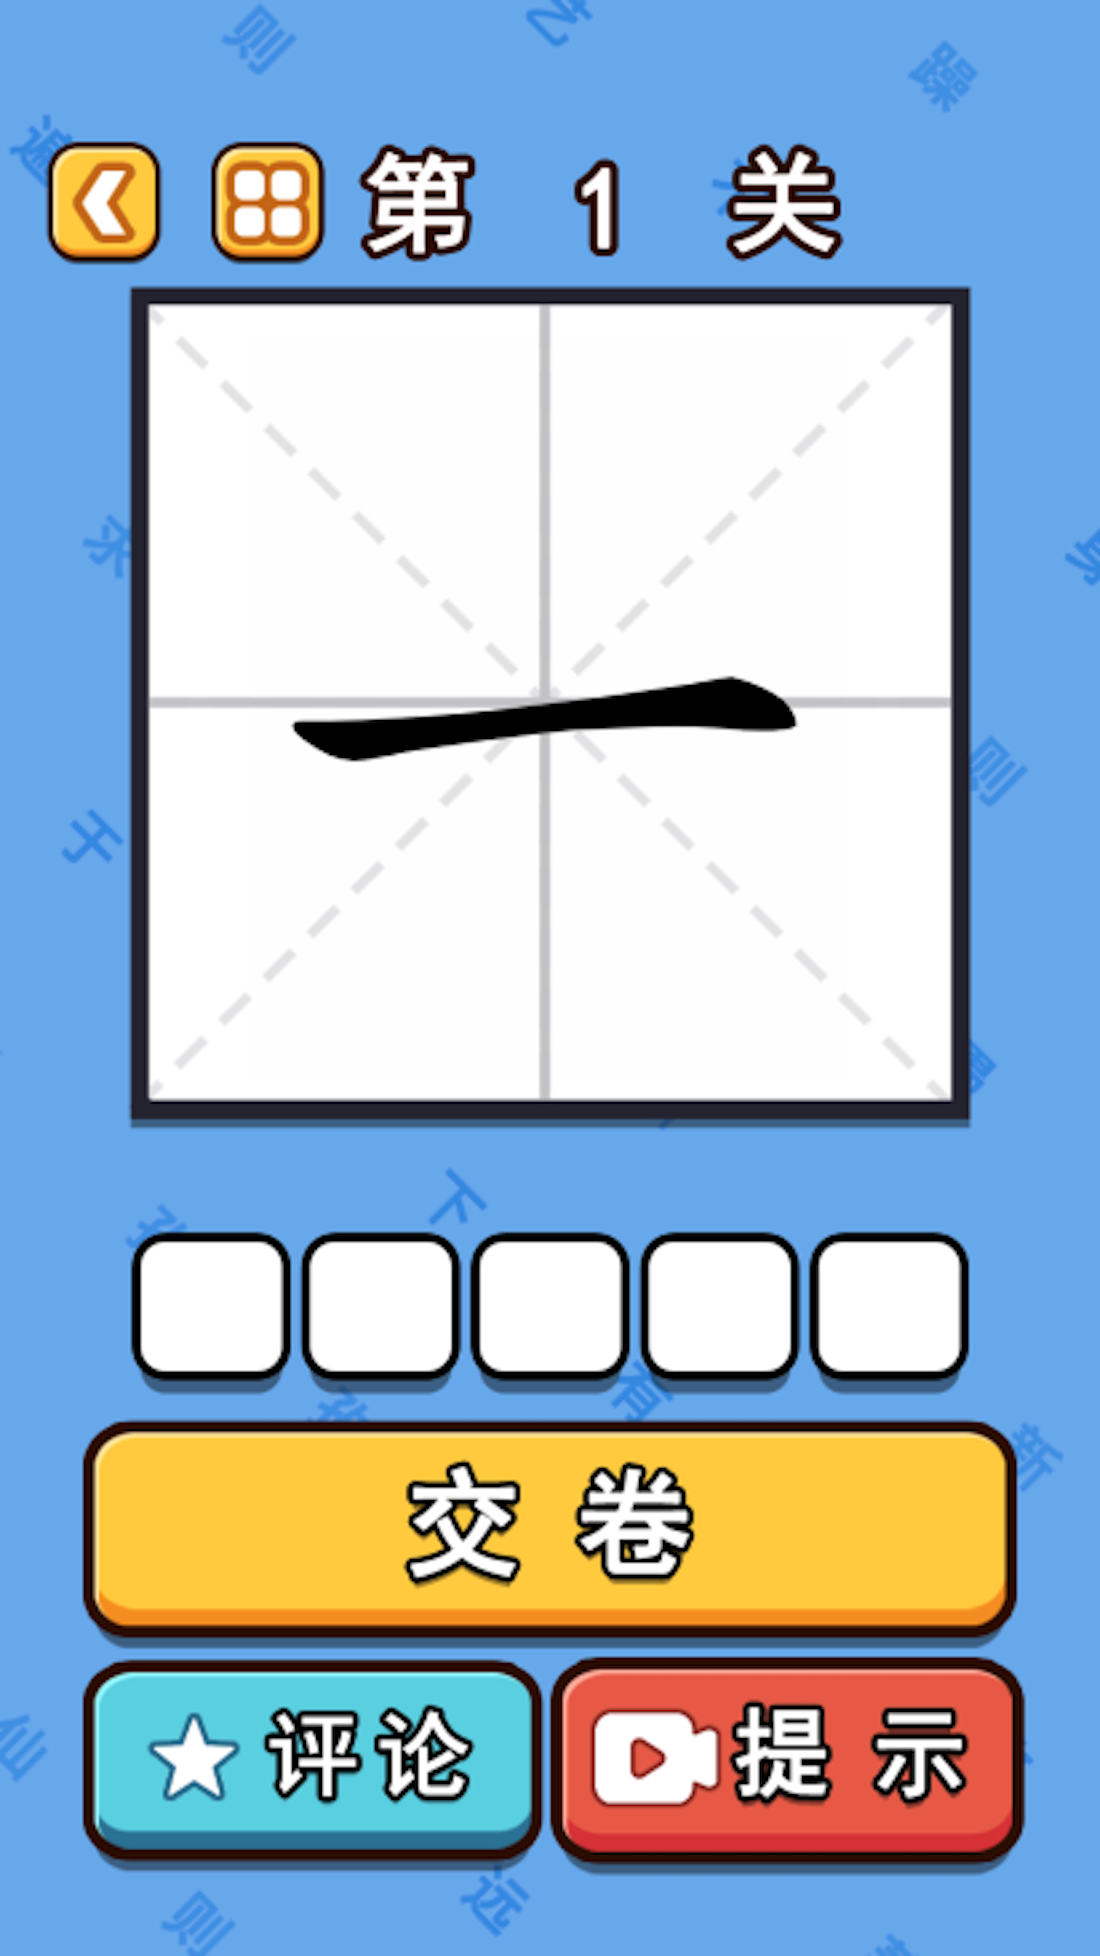 Screenshot 1 of Bí ẩn của các từ-Trò chơi chữ Hán tự 1.0.0